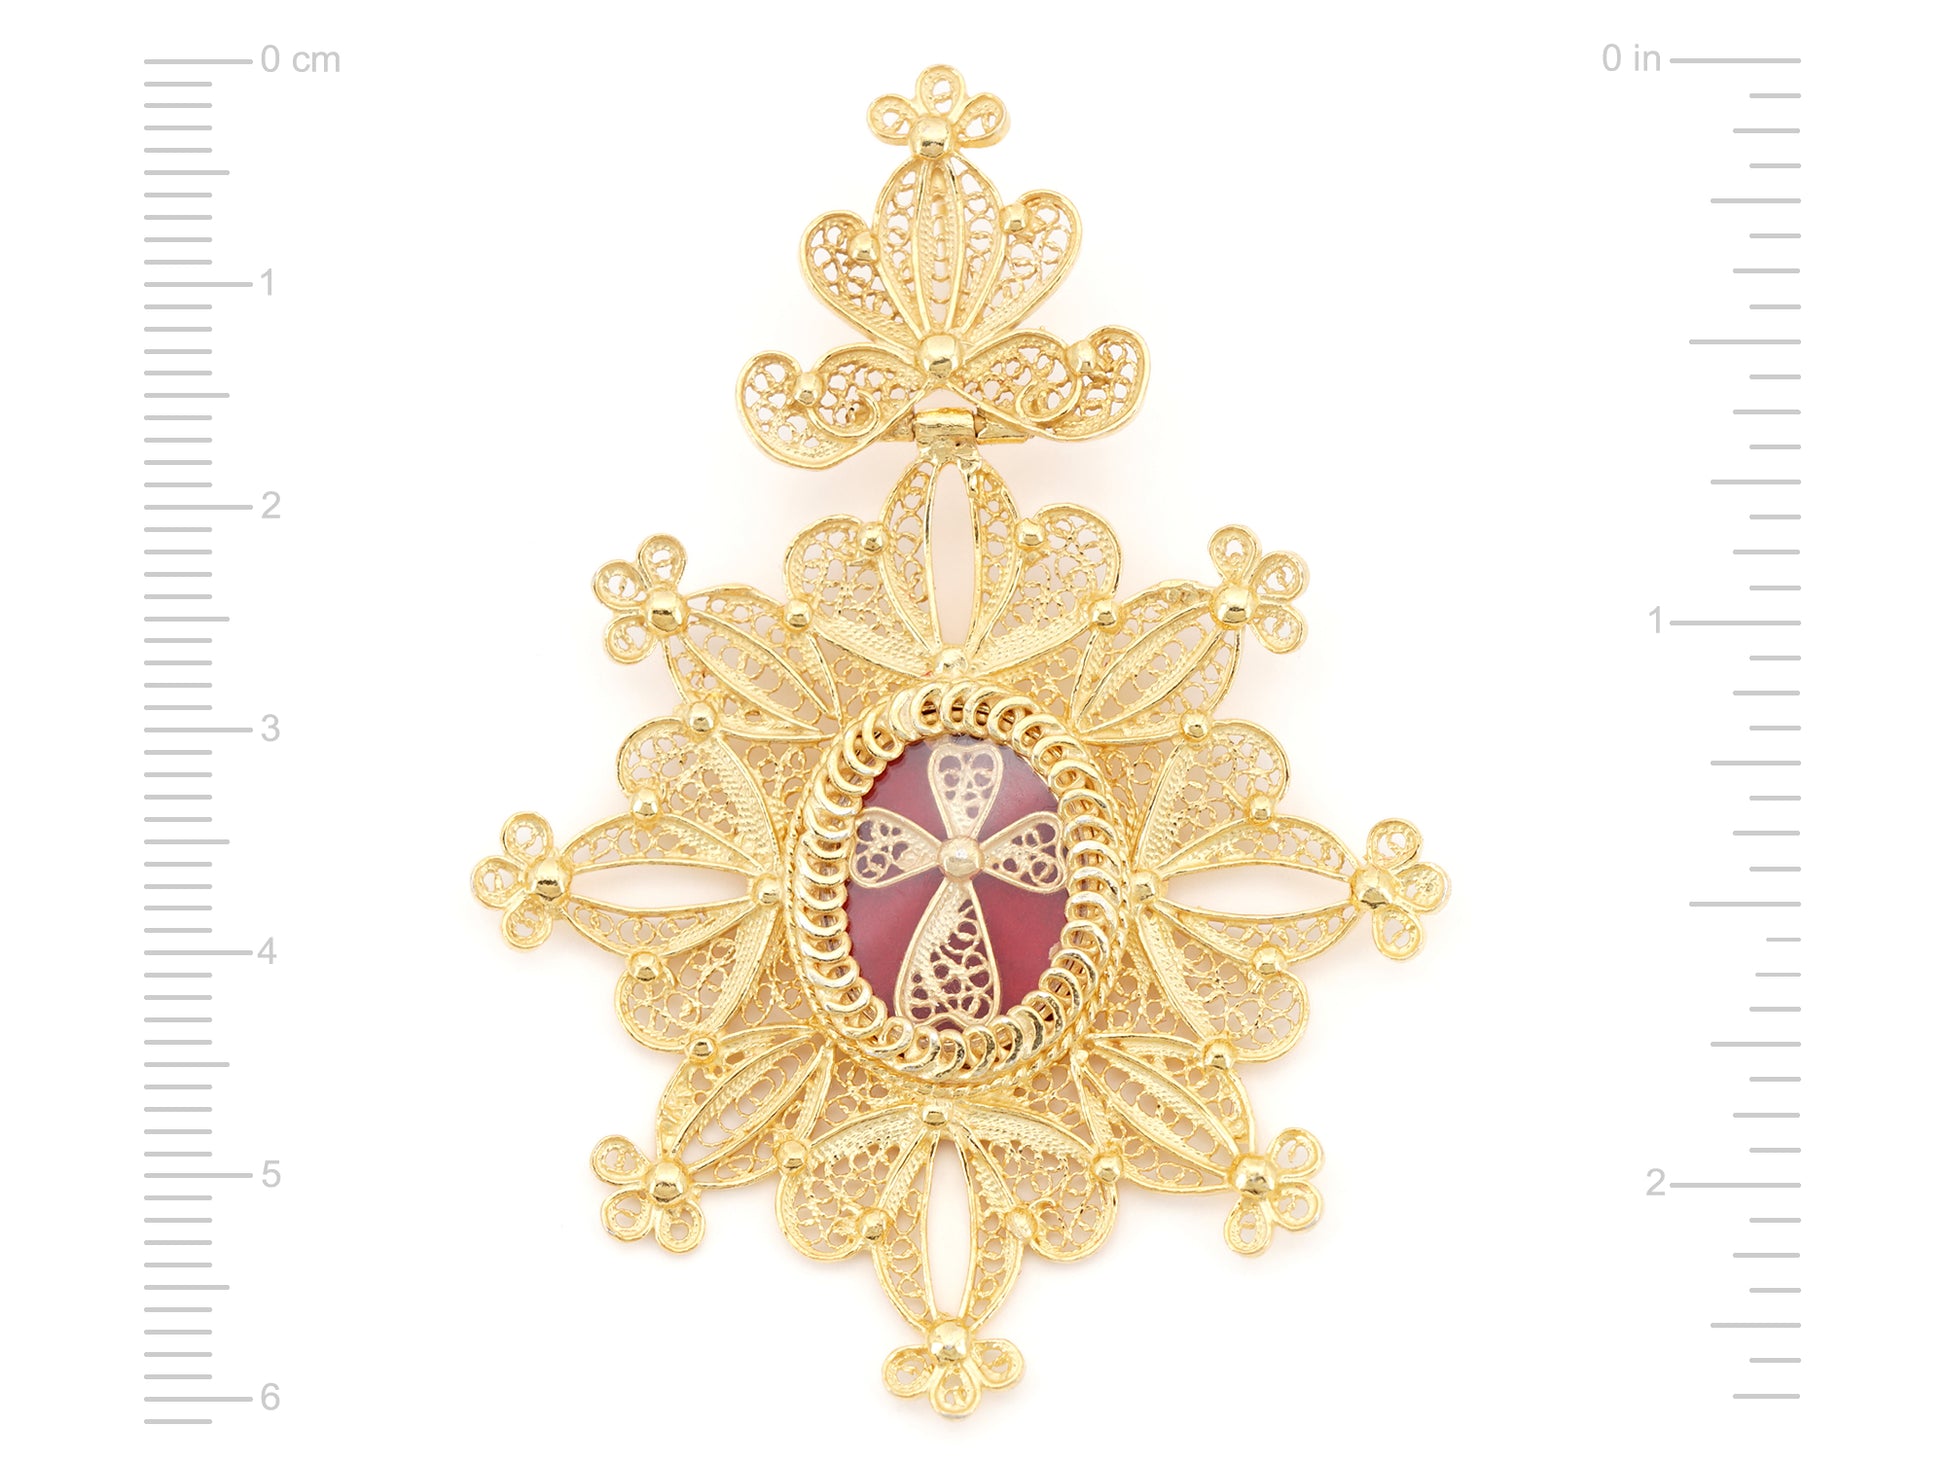 Medalha Relicário / Custódia Oval, Filigrana Portuguesa, Prata de Lei 925 Dourada - Medidas